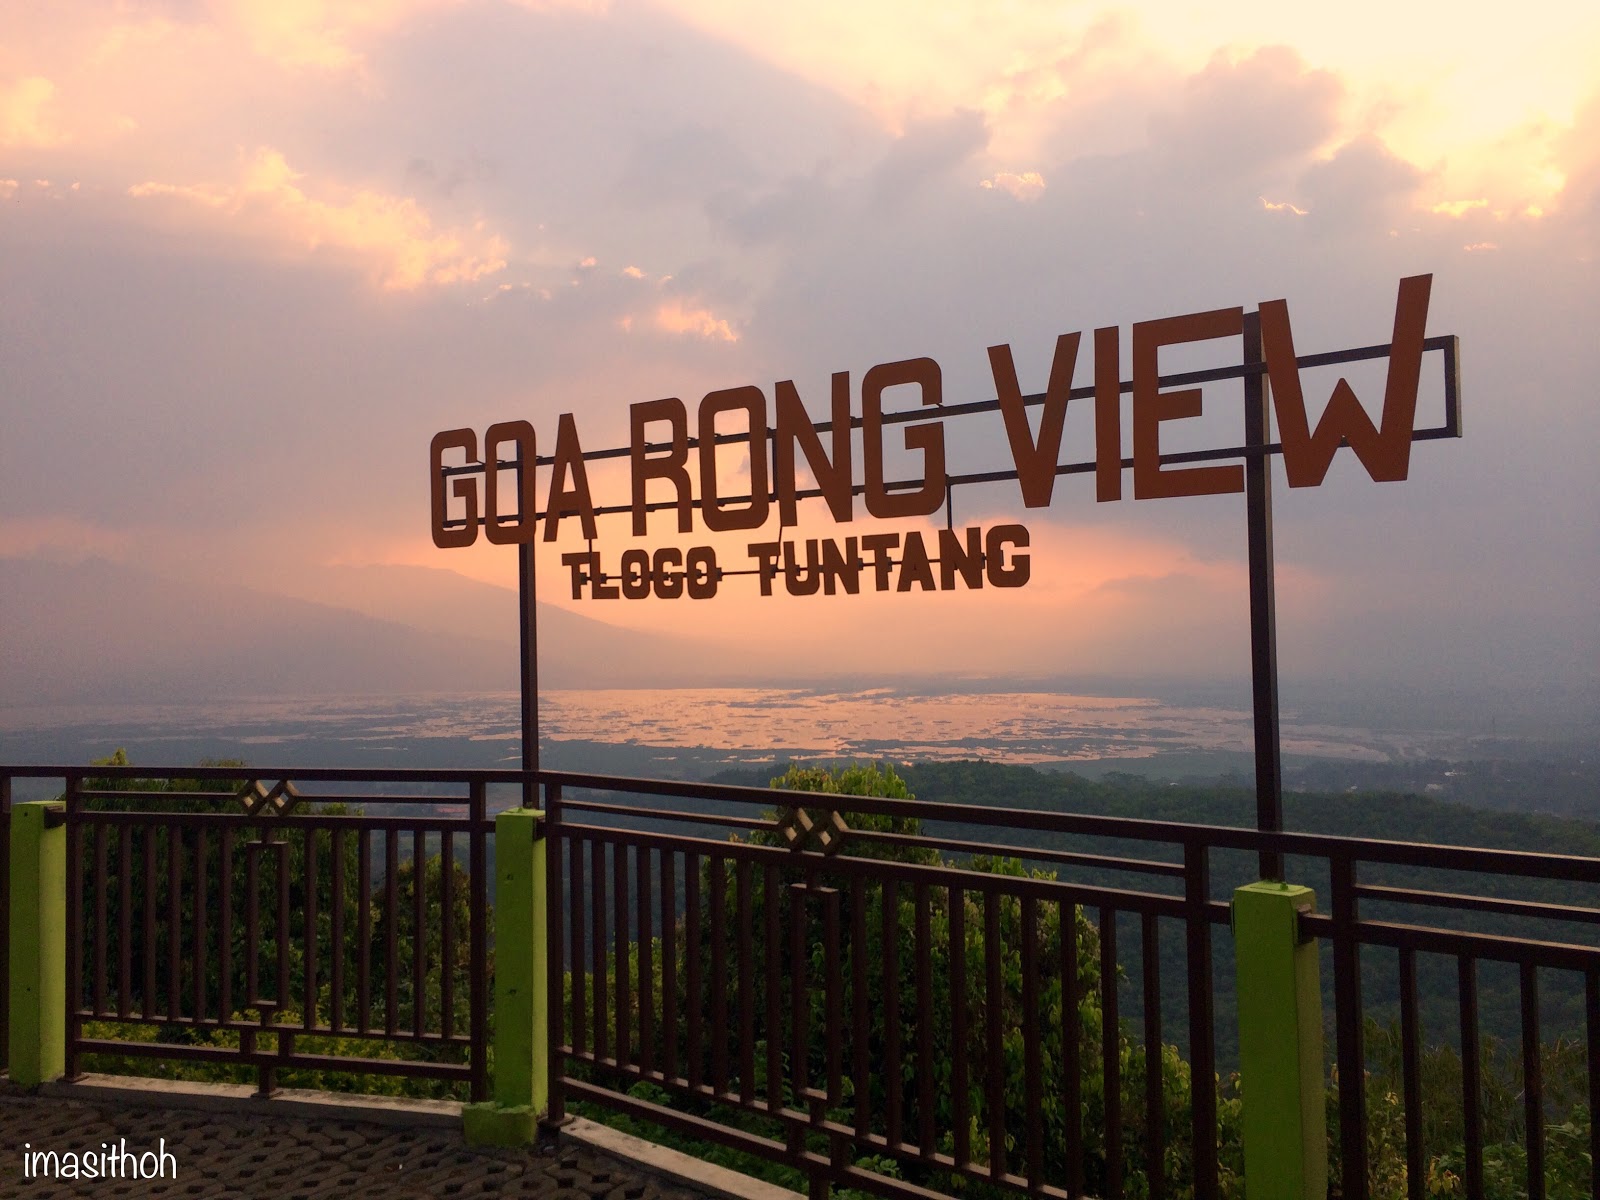 Tlogo Resort & Gua Rong View Tuntang Salatiga